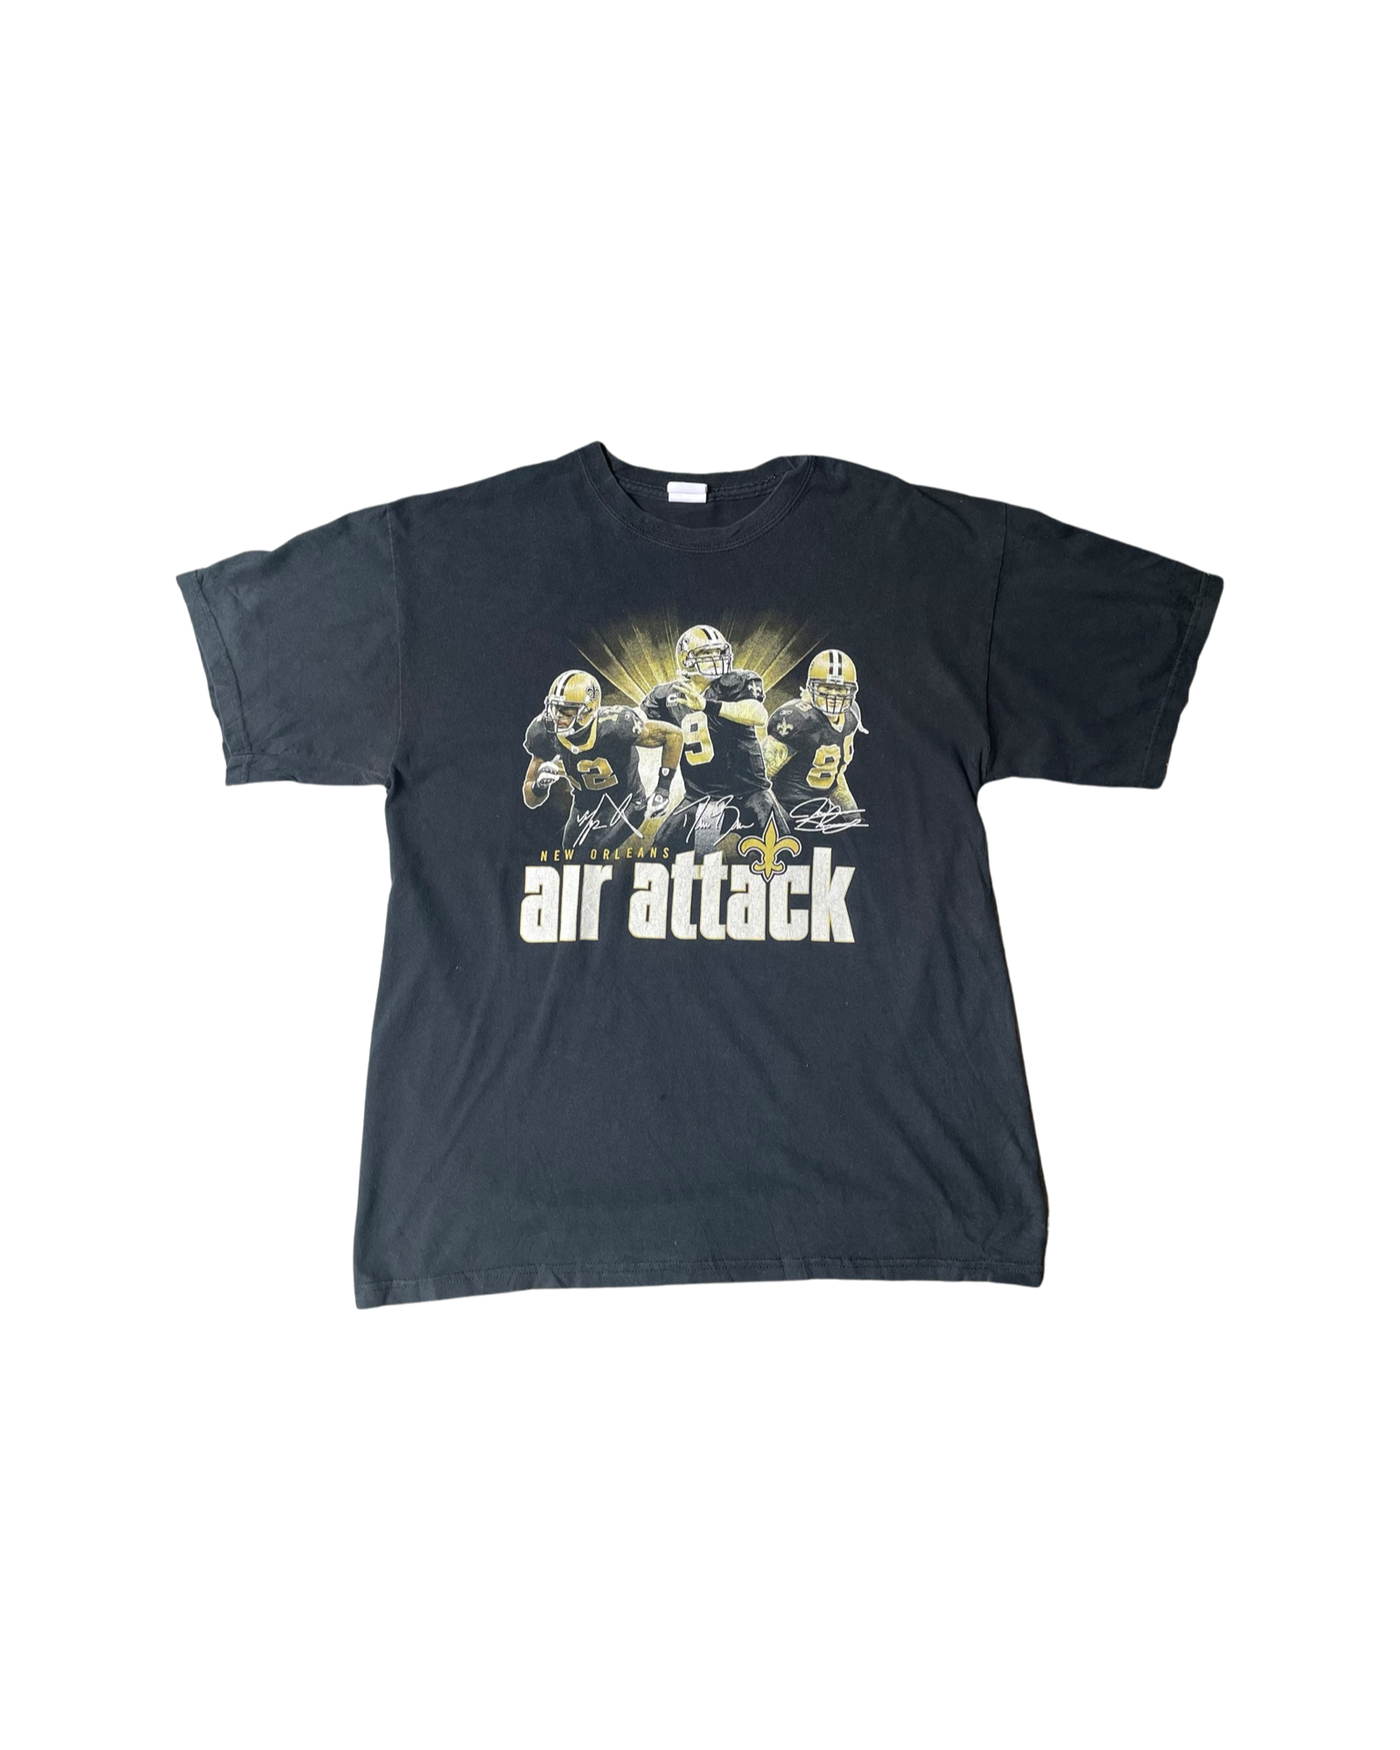 Vintage NFL New Orleans Saints T-Shirt